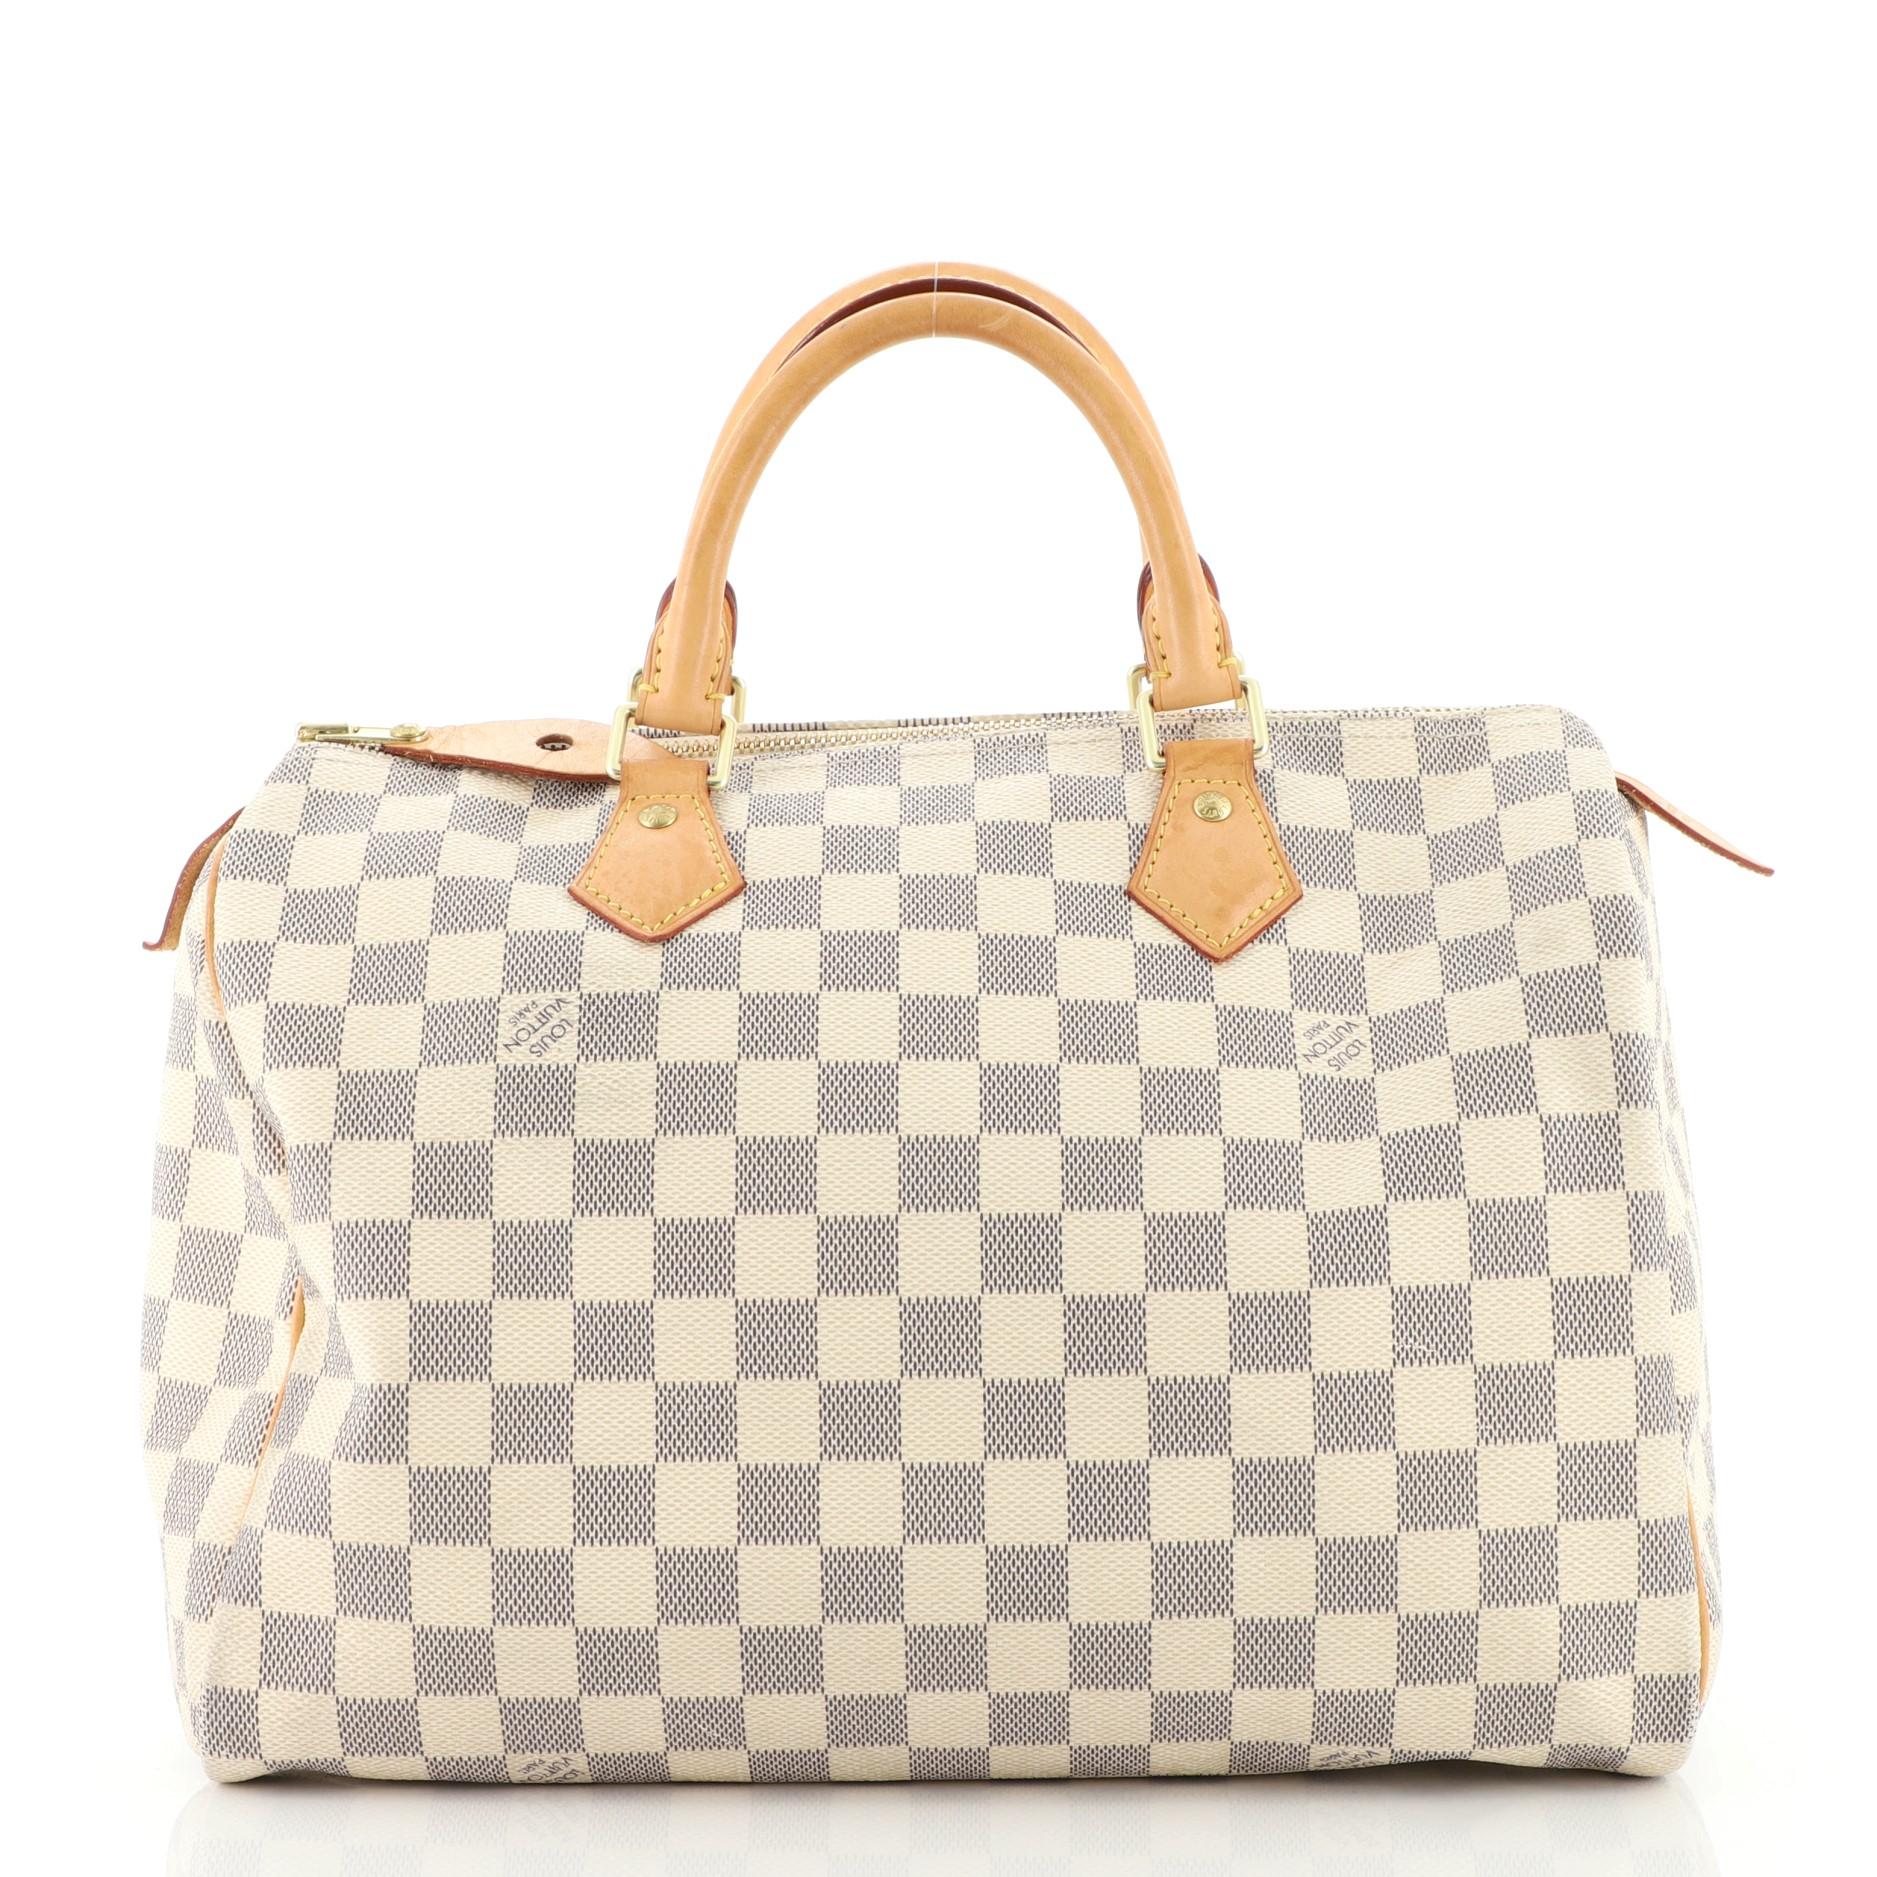 Beige Louis Vuitton Speedy Handbag Damier 30